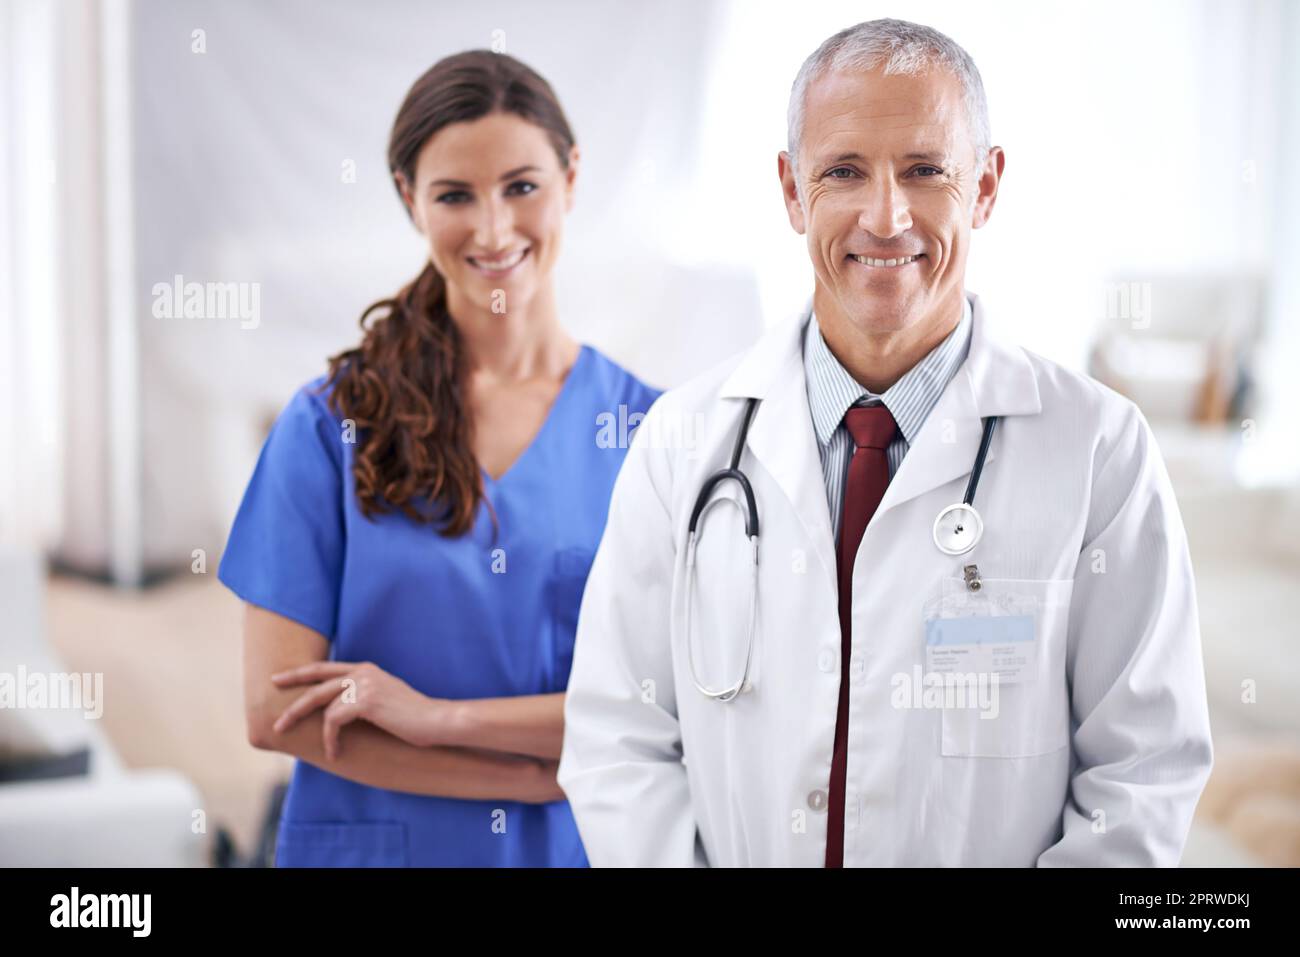 Ihr spezialisiertes Operationsteam. Porträt von zwei freundlichen Ärzten. Stockfoto